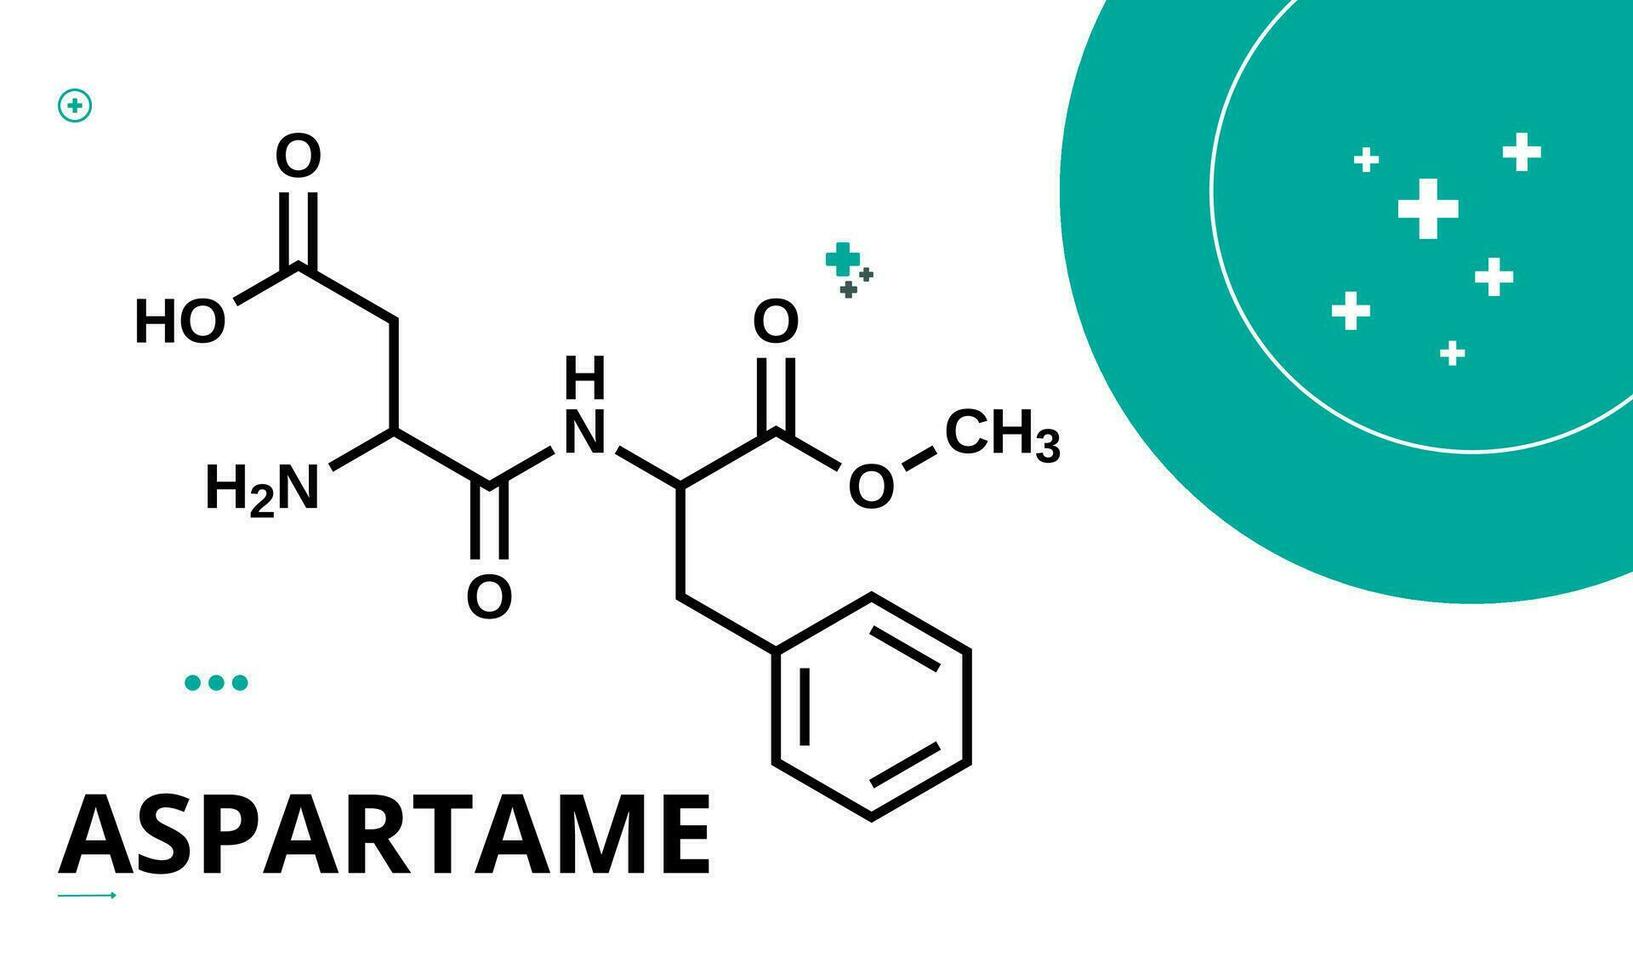 aspartame est une peu calorique artificiel édulcorant cette est approximativement 100 fois plus doux que sucre. édulcorant des produits vecteur